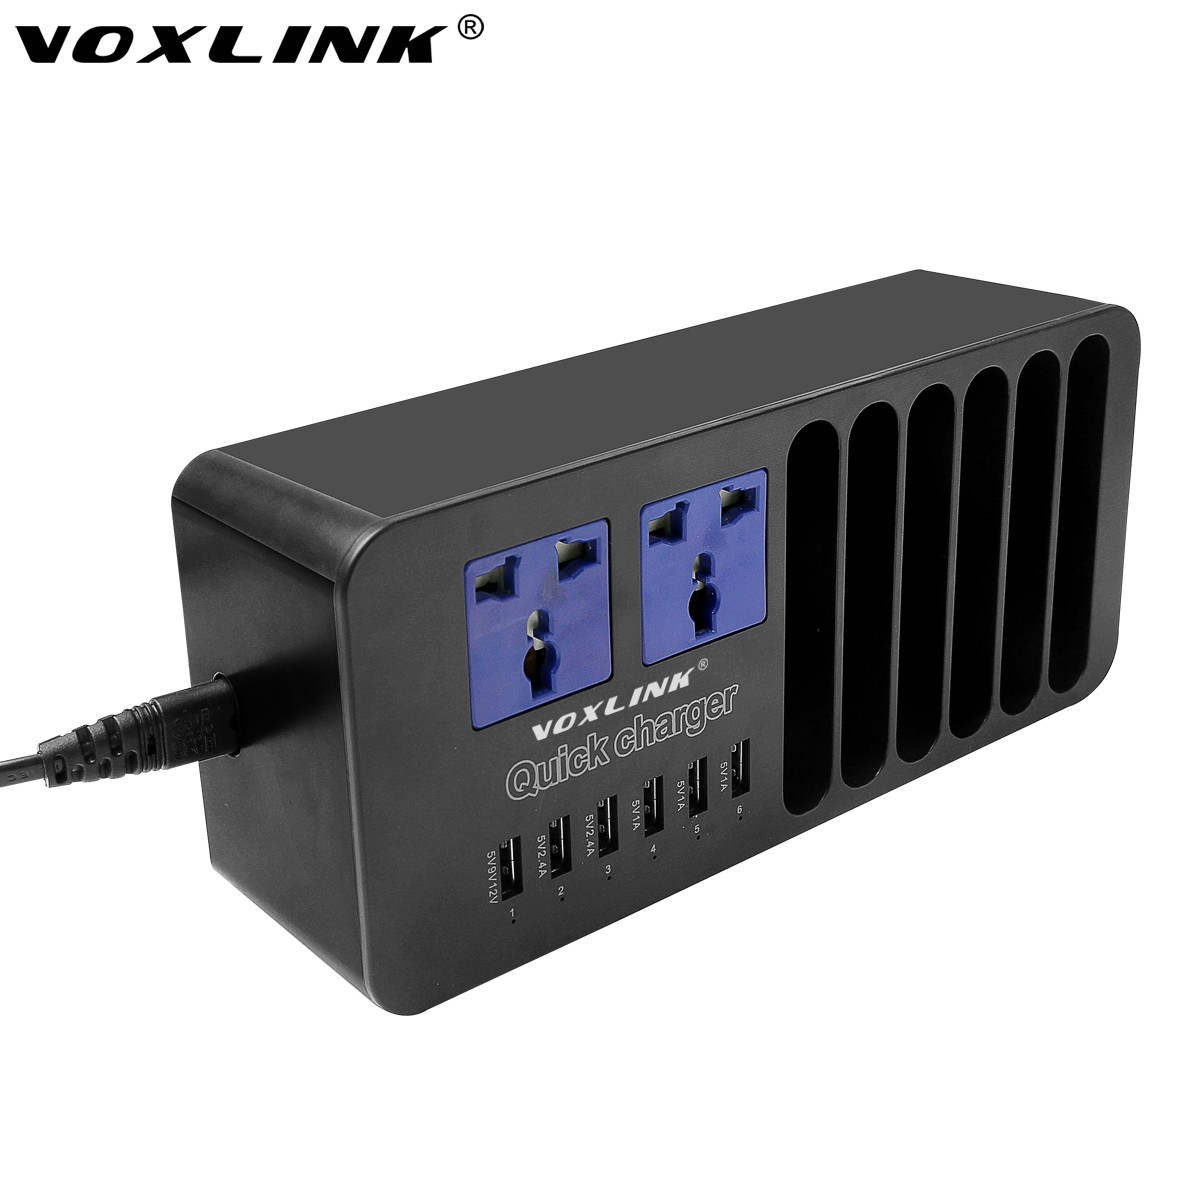 VOXLINK 5V 10A 50W 6-Port USB car Charger Travel Adapter Intelligent Detect Charging Black EU